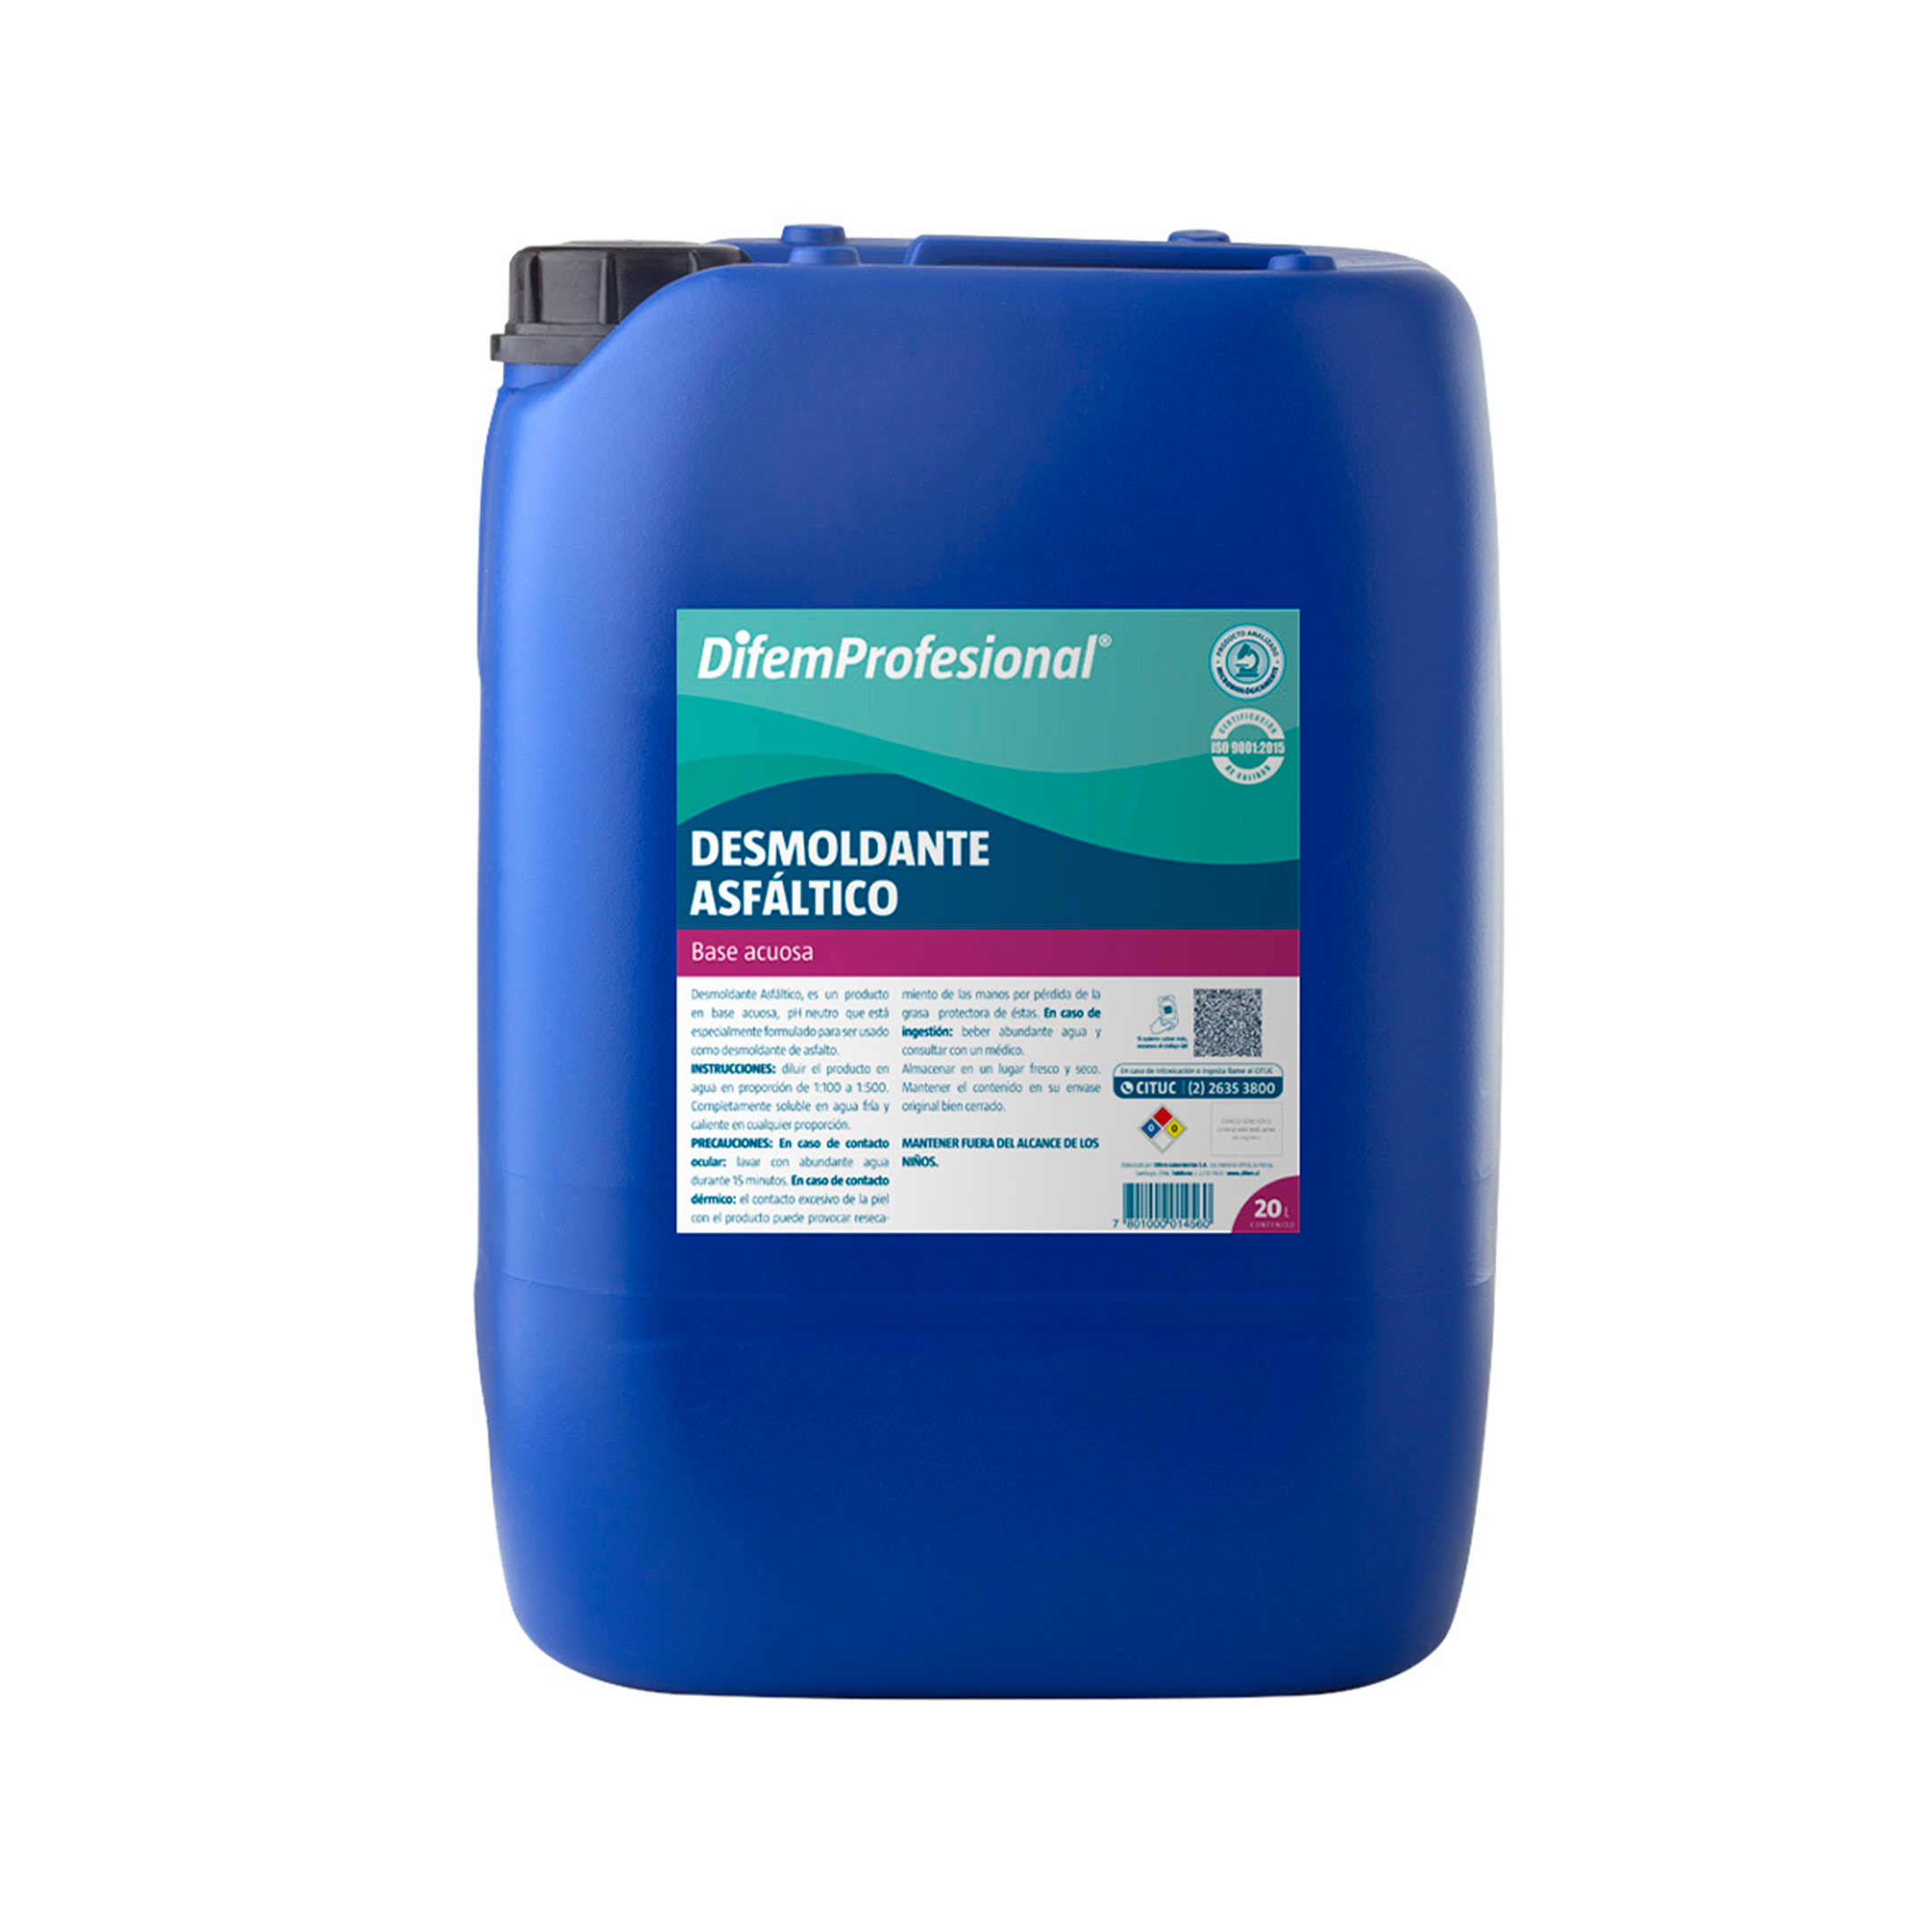 Desmoldante Asfáltico es un producto en base acuosa, pH neutro que está especialmente formulado para ser usado como desmoldante para asfalto.